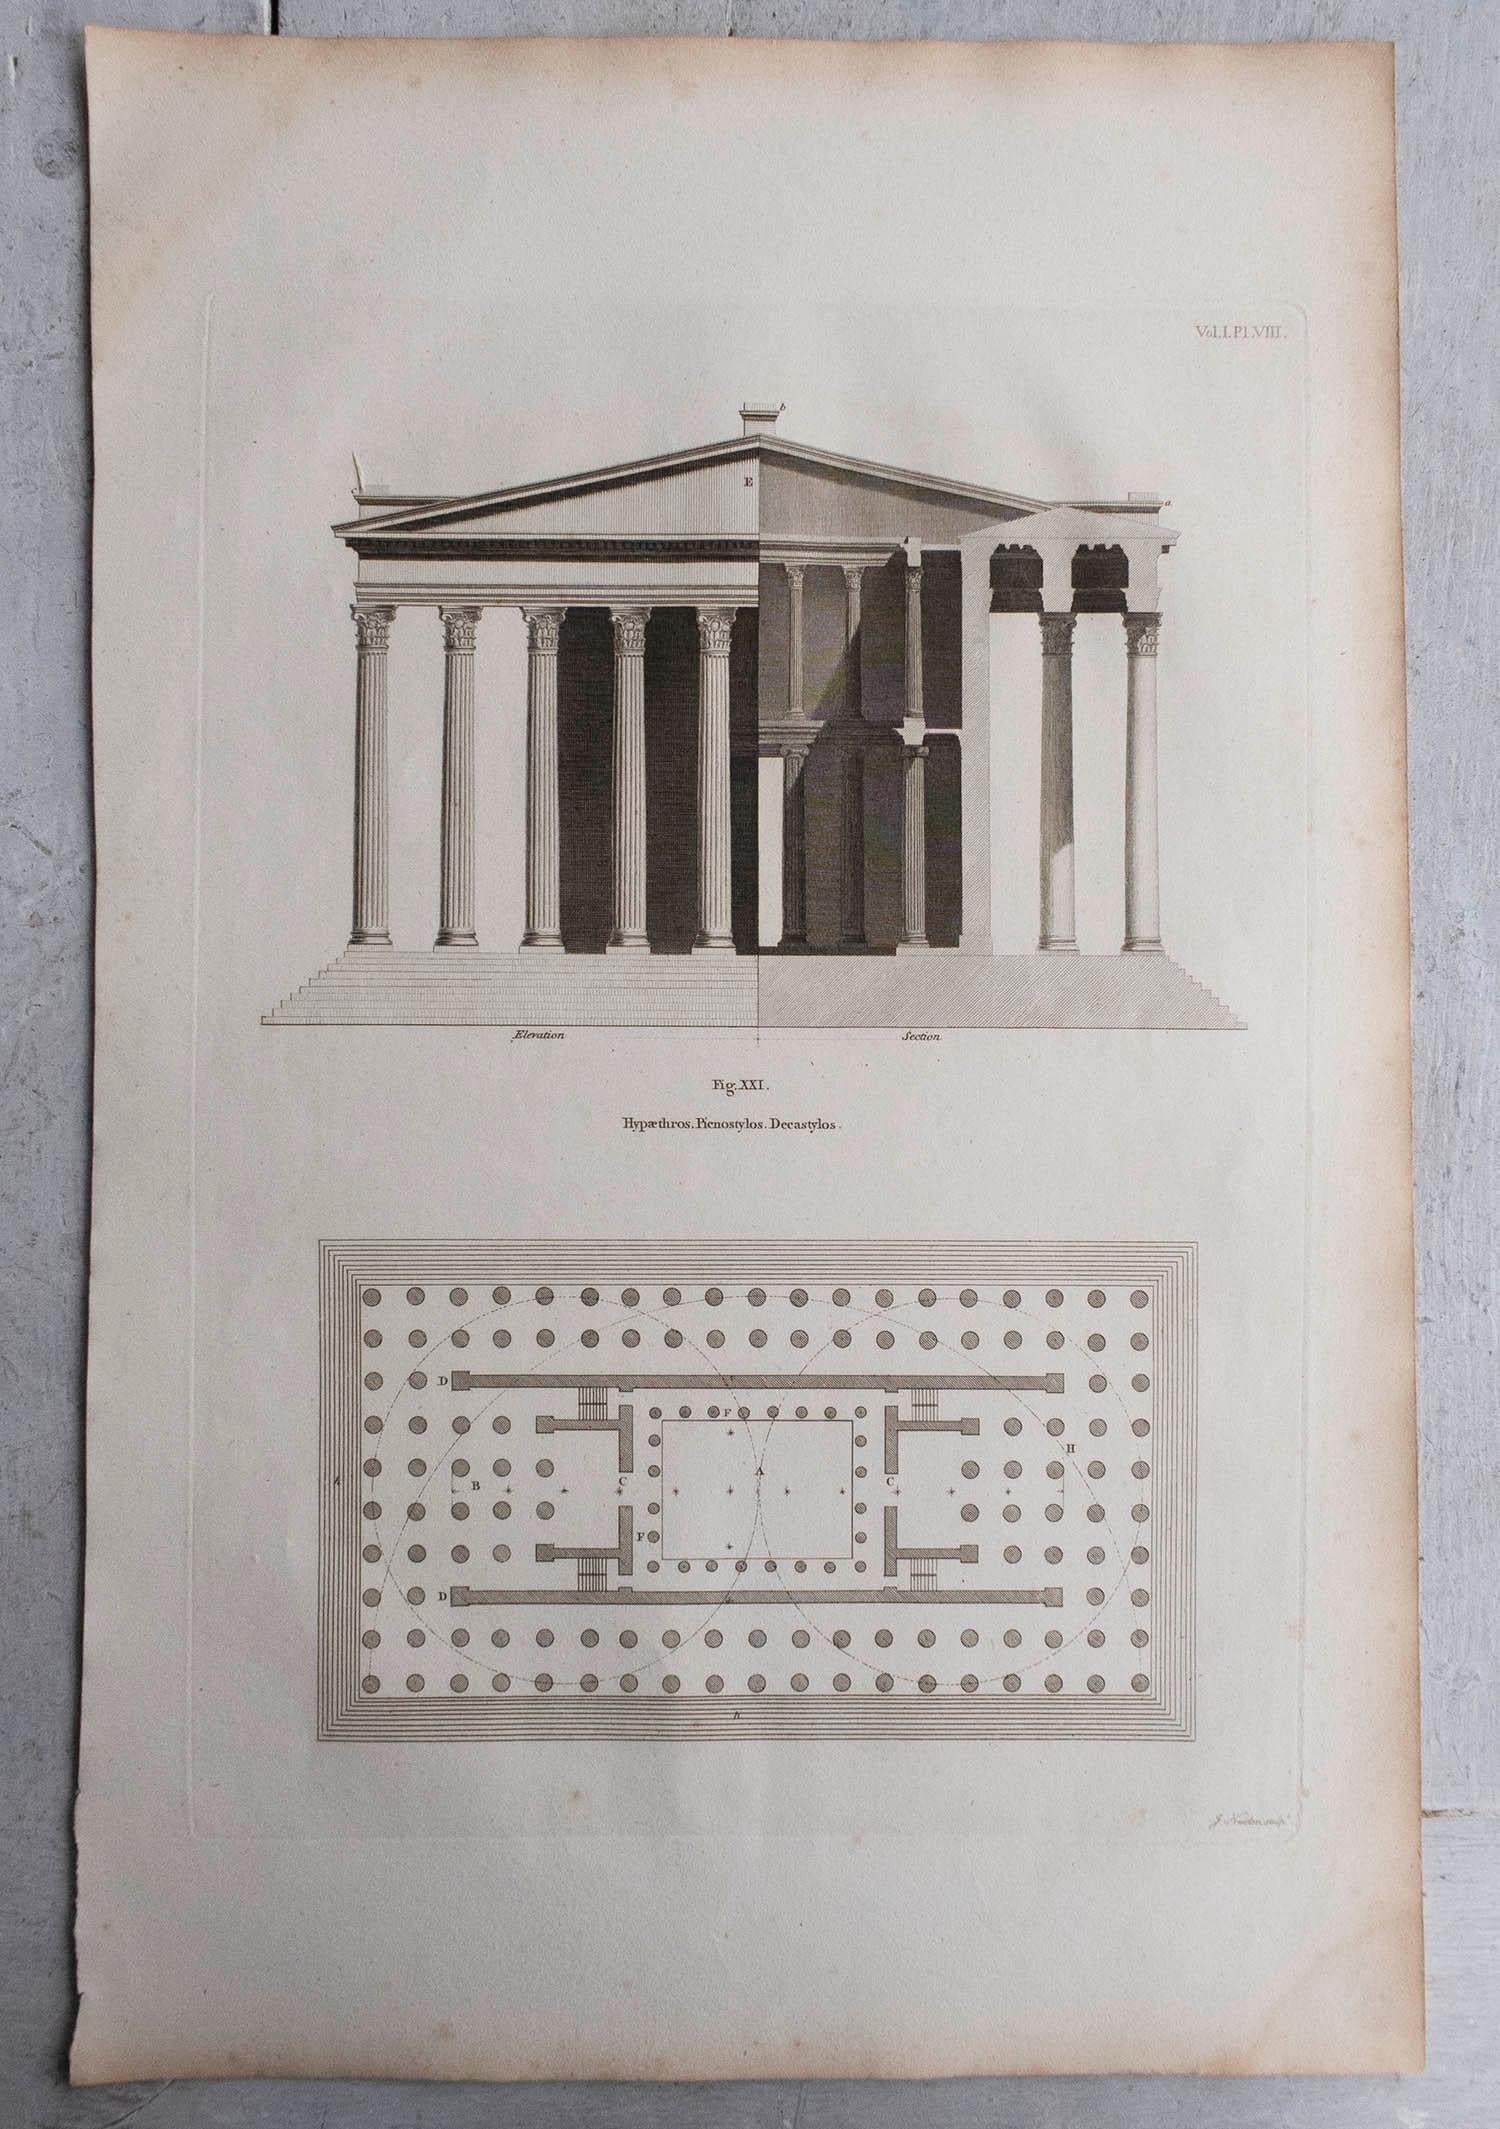 Wunderschöner Satz von 10 Architekturdrucken.

Kupferstiche von J. Newton nach Entwürfen von Vetruvius

Veröffentlicht C.1790

Ungerahmt und nicht mattiert.




